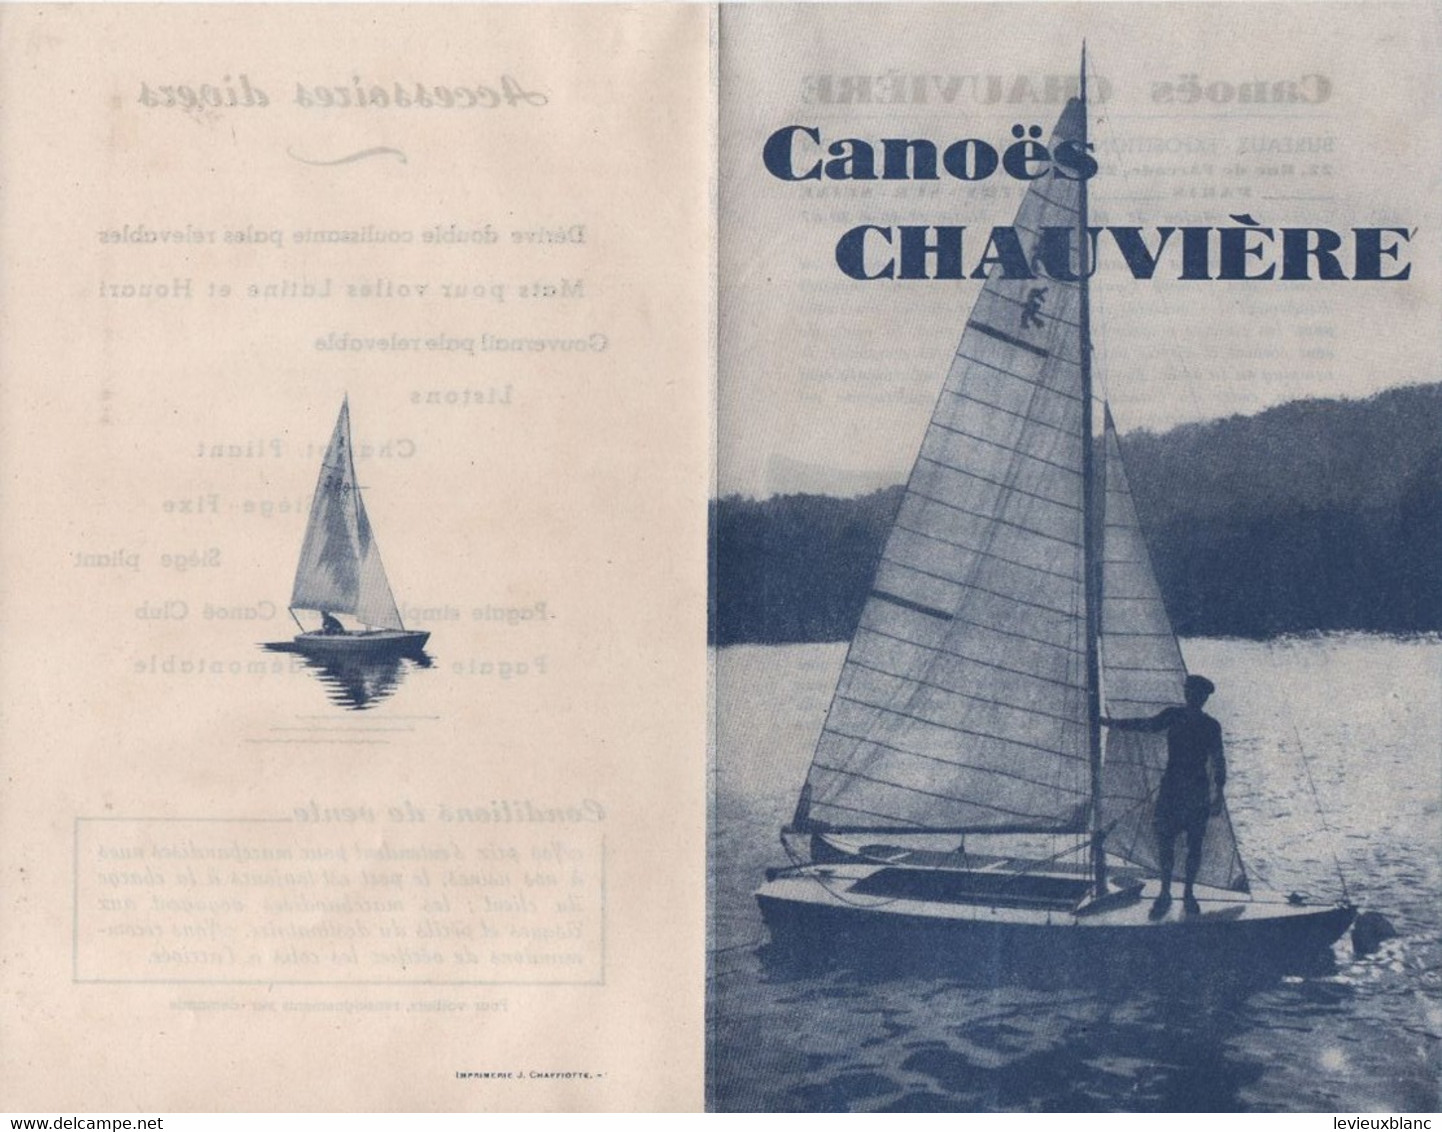 Prospectus Commercial  à 2 Volets ( 4 Pages )/CANOËS  CHAUVIERE/Vitry Sur Seine/Paris/Vers 1930-1945    MAR89 - Sports & Tourism